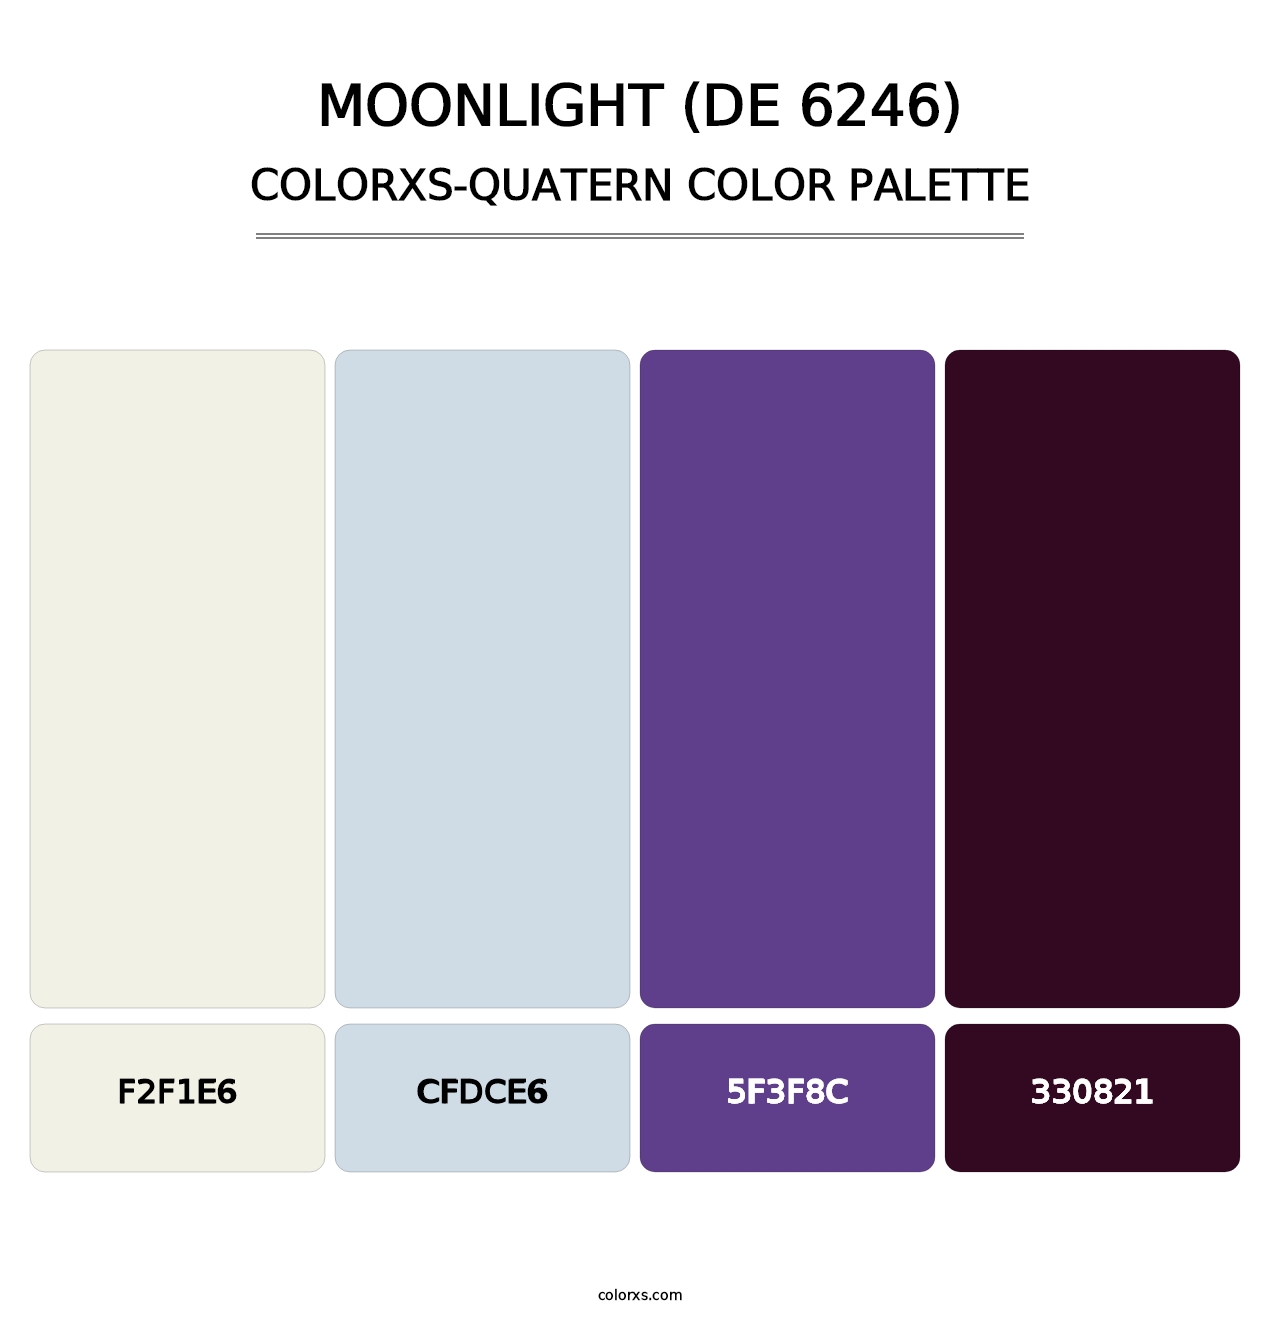 Moonlight (DE 6246) - Colorxs Quatern Palette